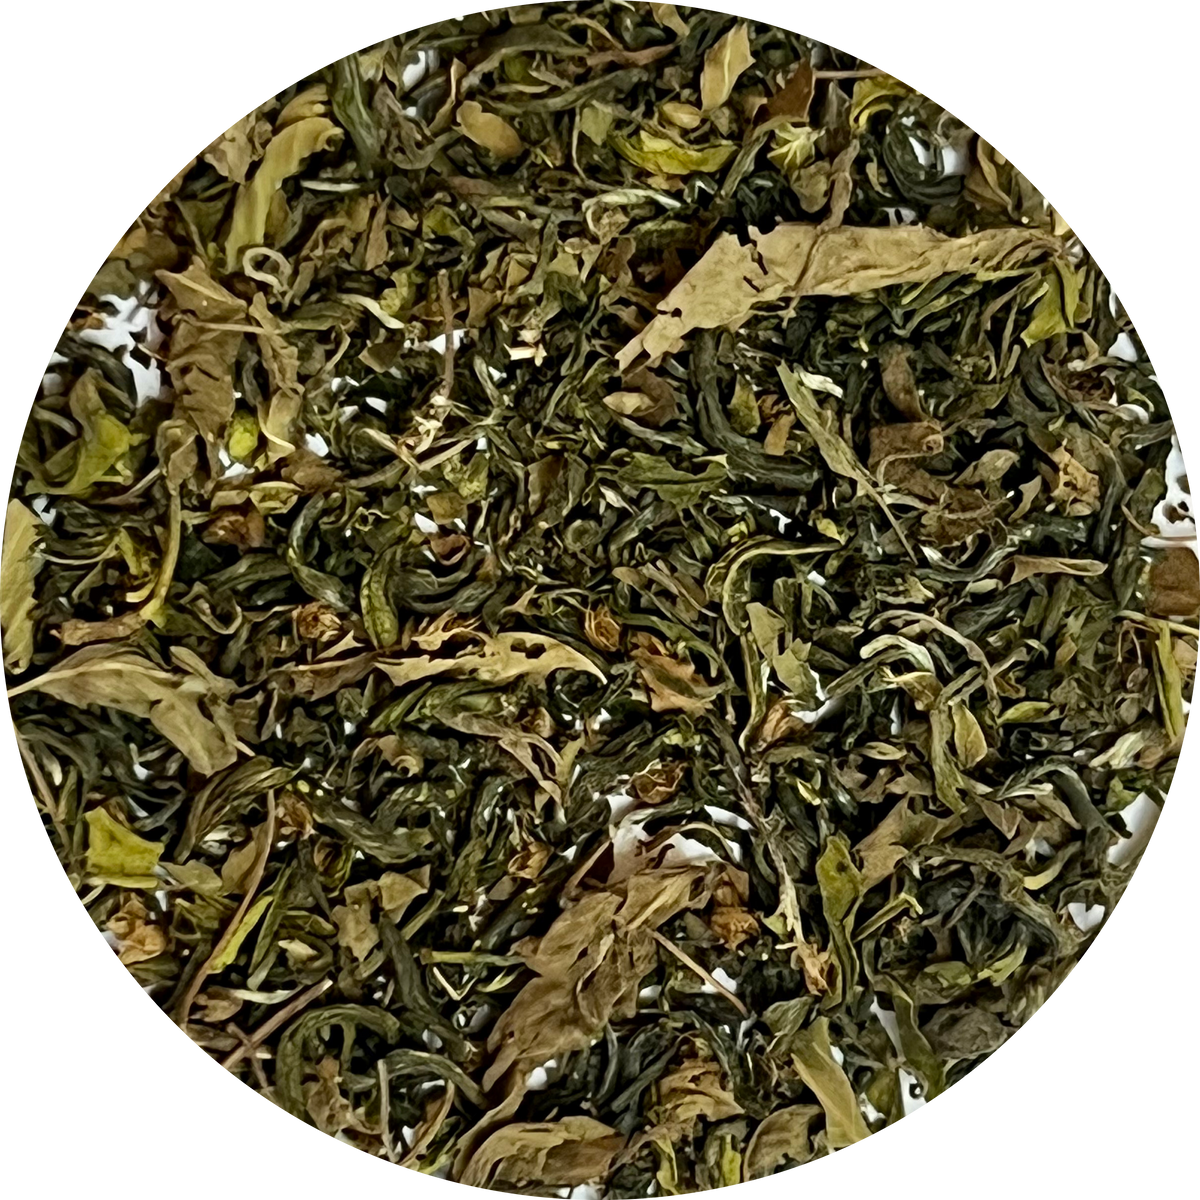 Tulsi green tea